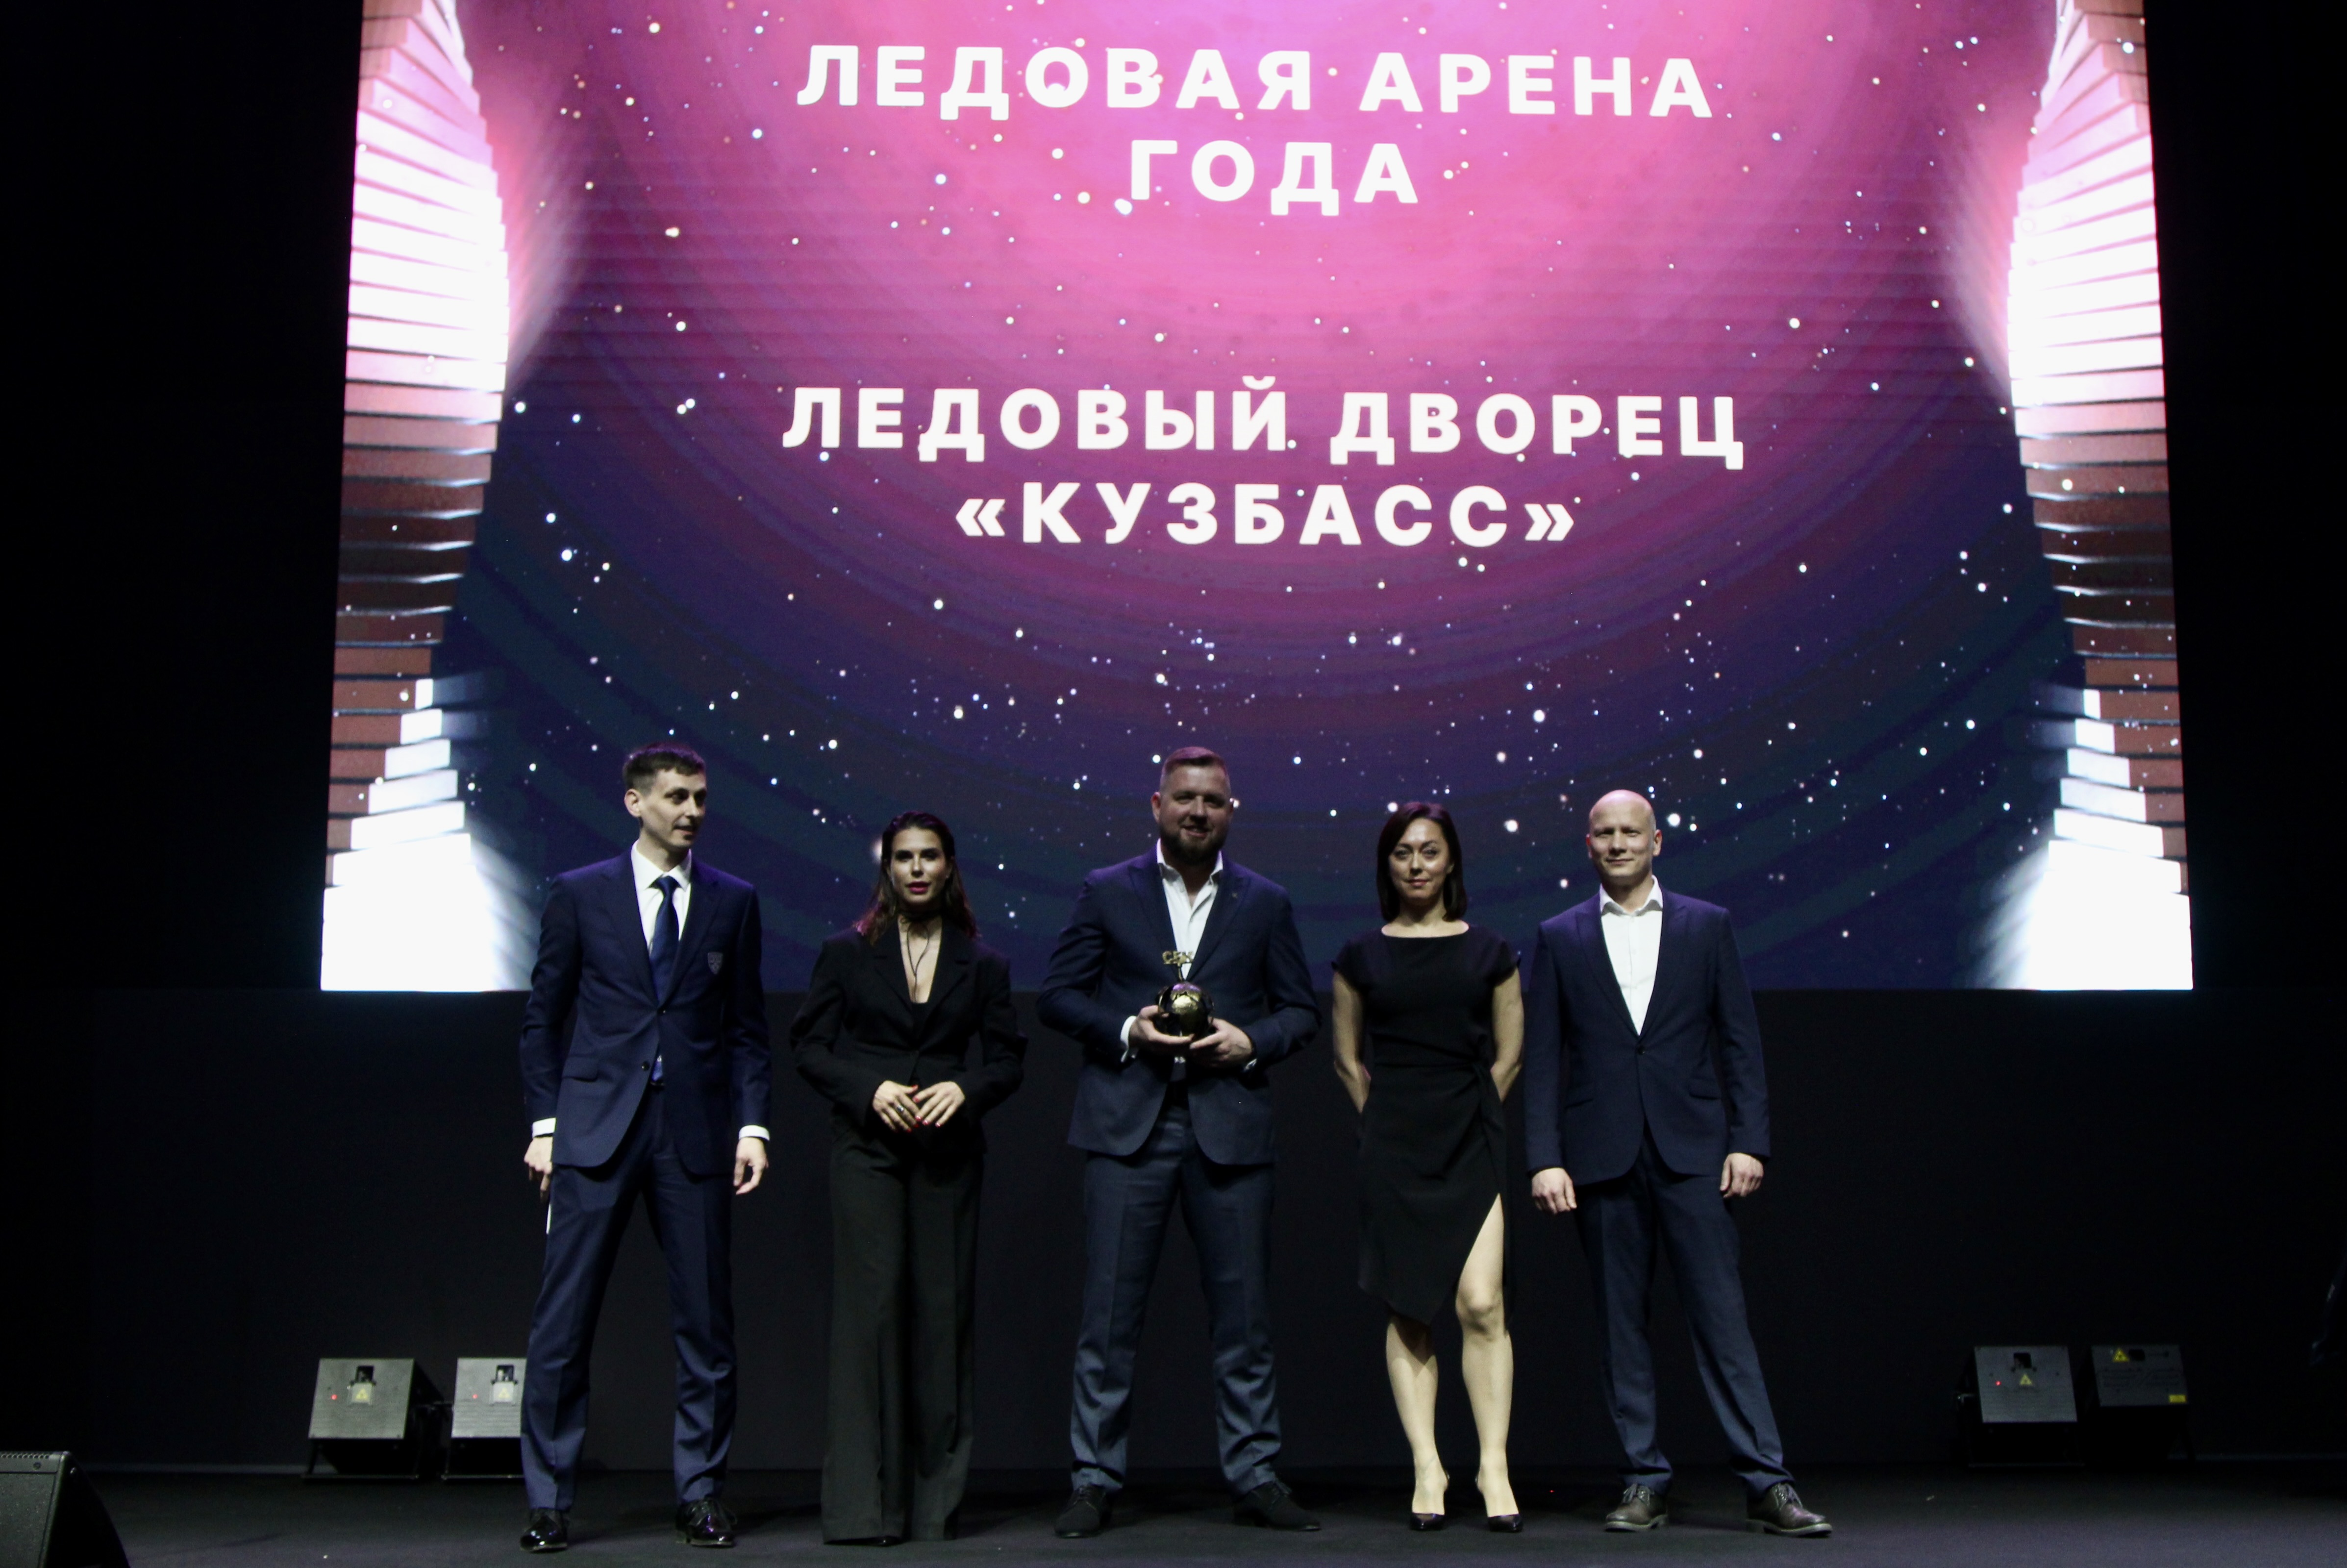 «Кузбасс» в Кемерово стал «Ледовой ареной года» на VII Премии СБК